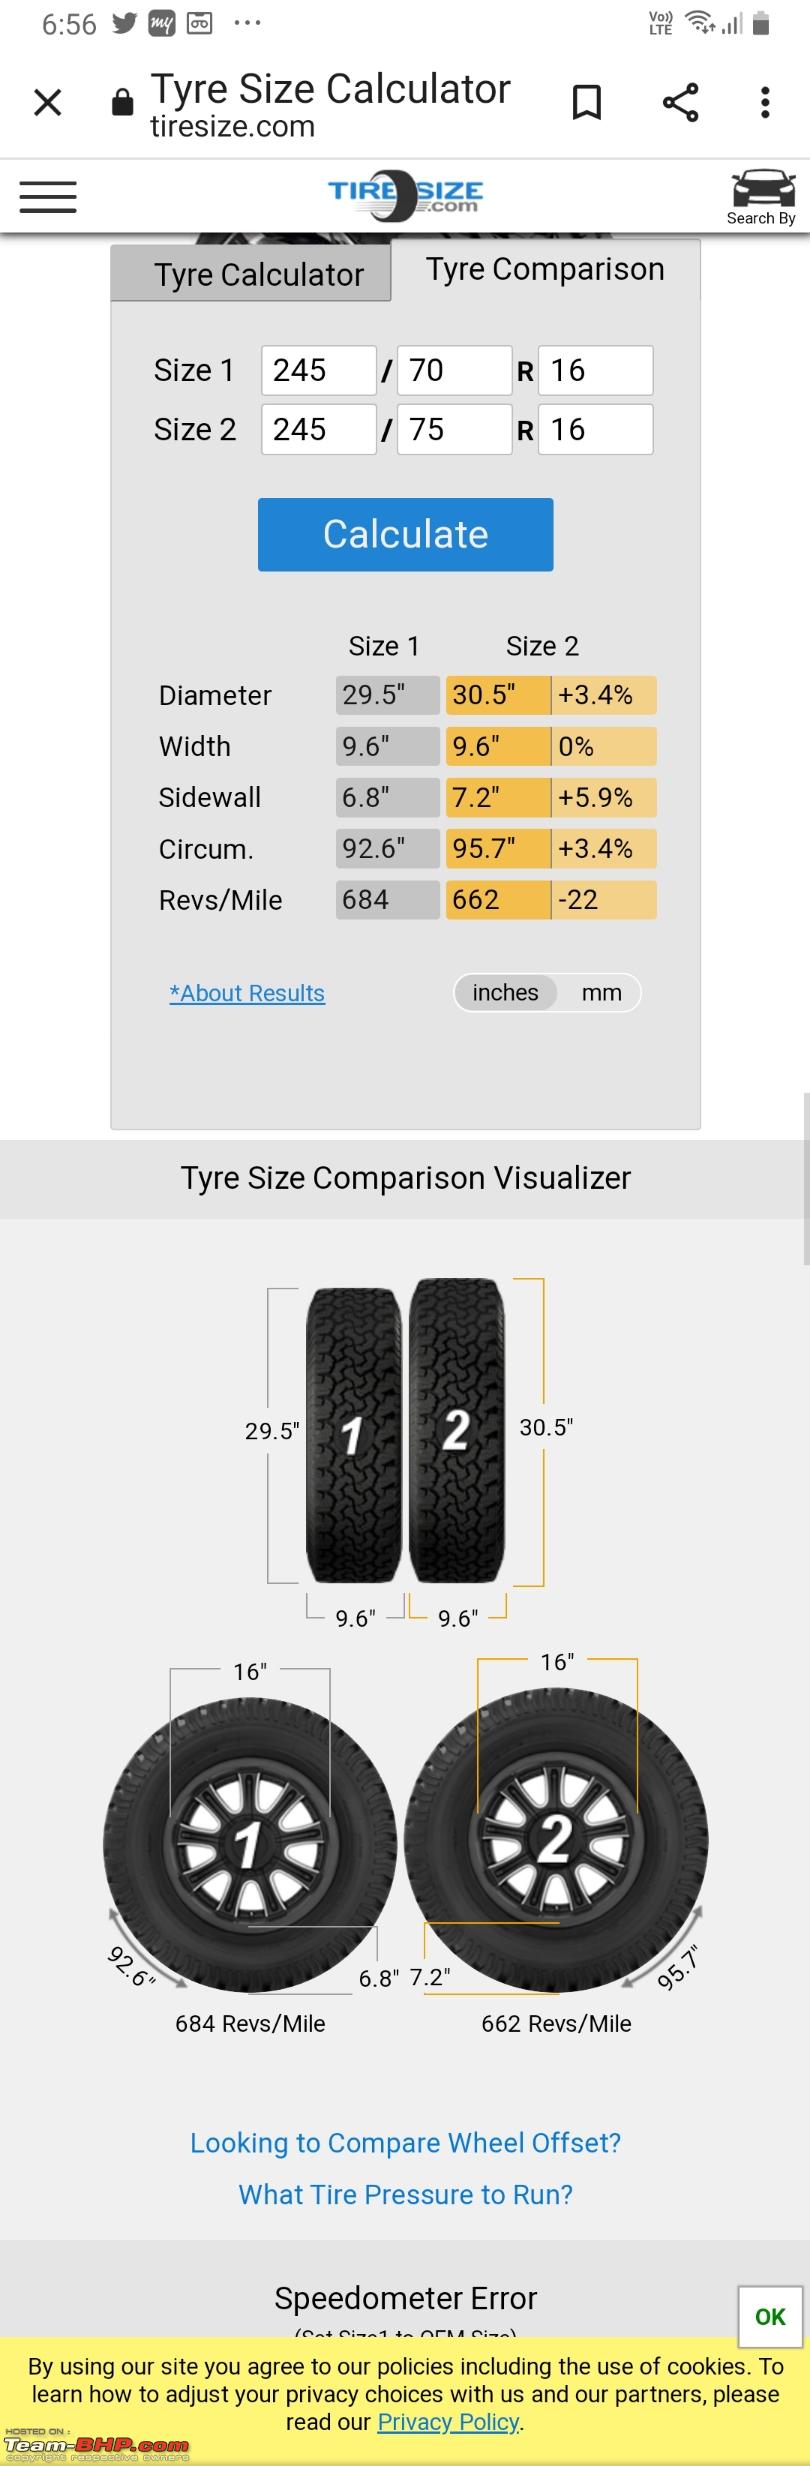 Tyre Calc. 175 65 и 185 65 разница